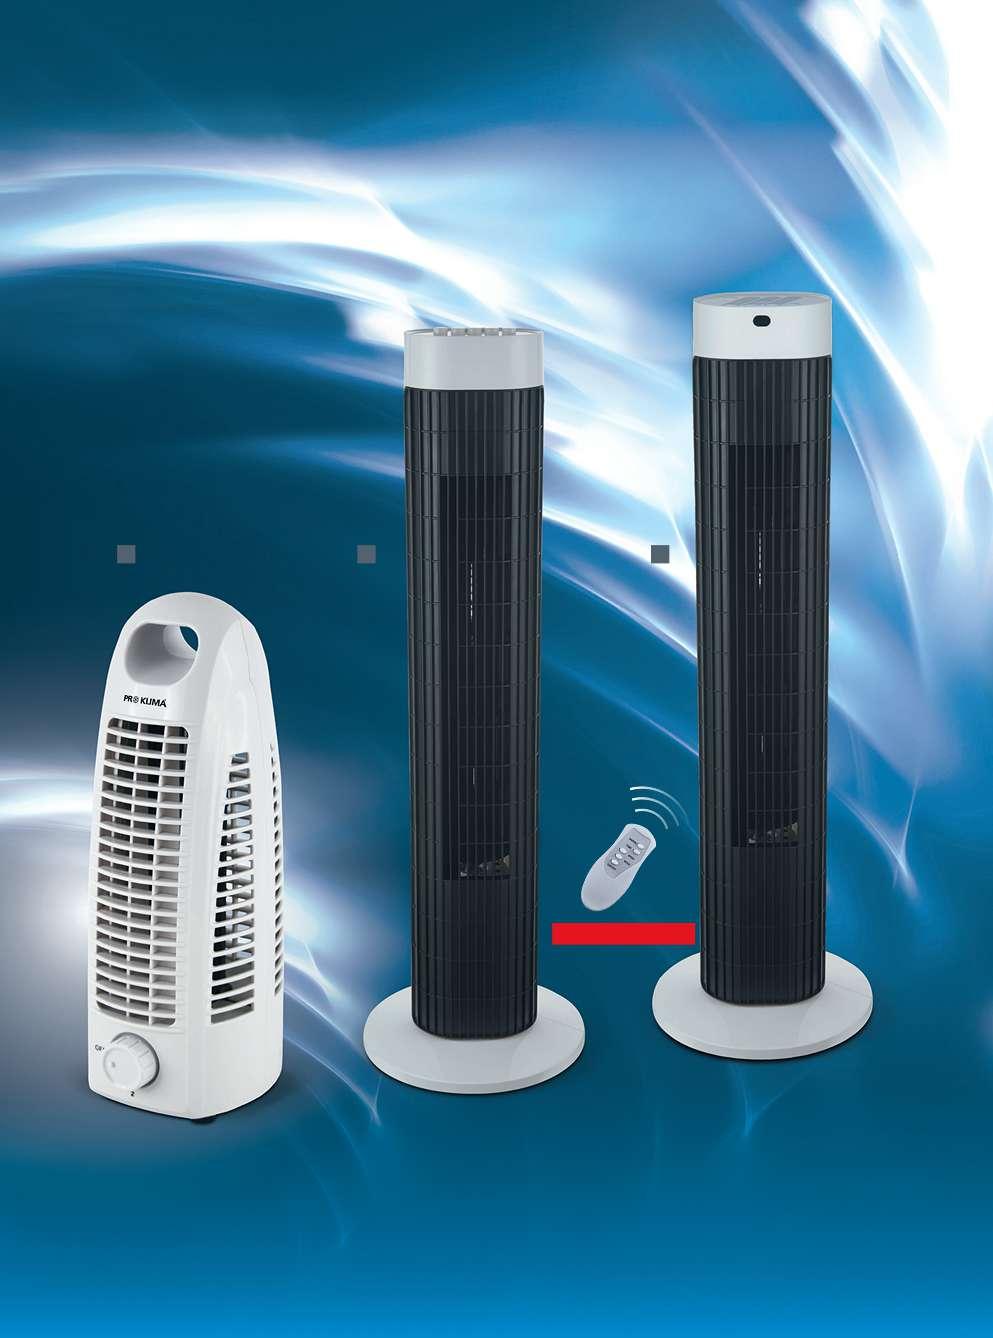 Chladivá svěžest pro kanceláře a obytné prostory 1 2 3 S dálkovým ovládáním Maximální cirkulace vzduchu díky oscilaci ventilátorů. (Poz. 1 4.) 1.